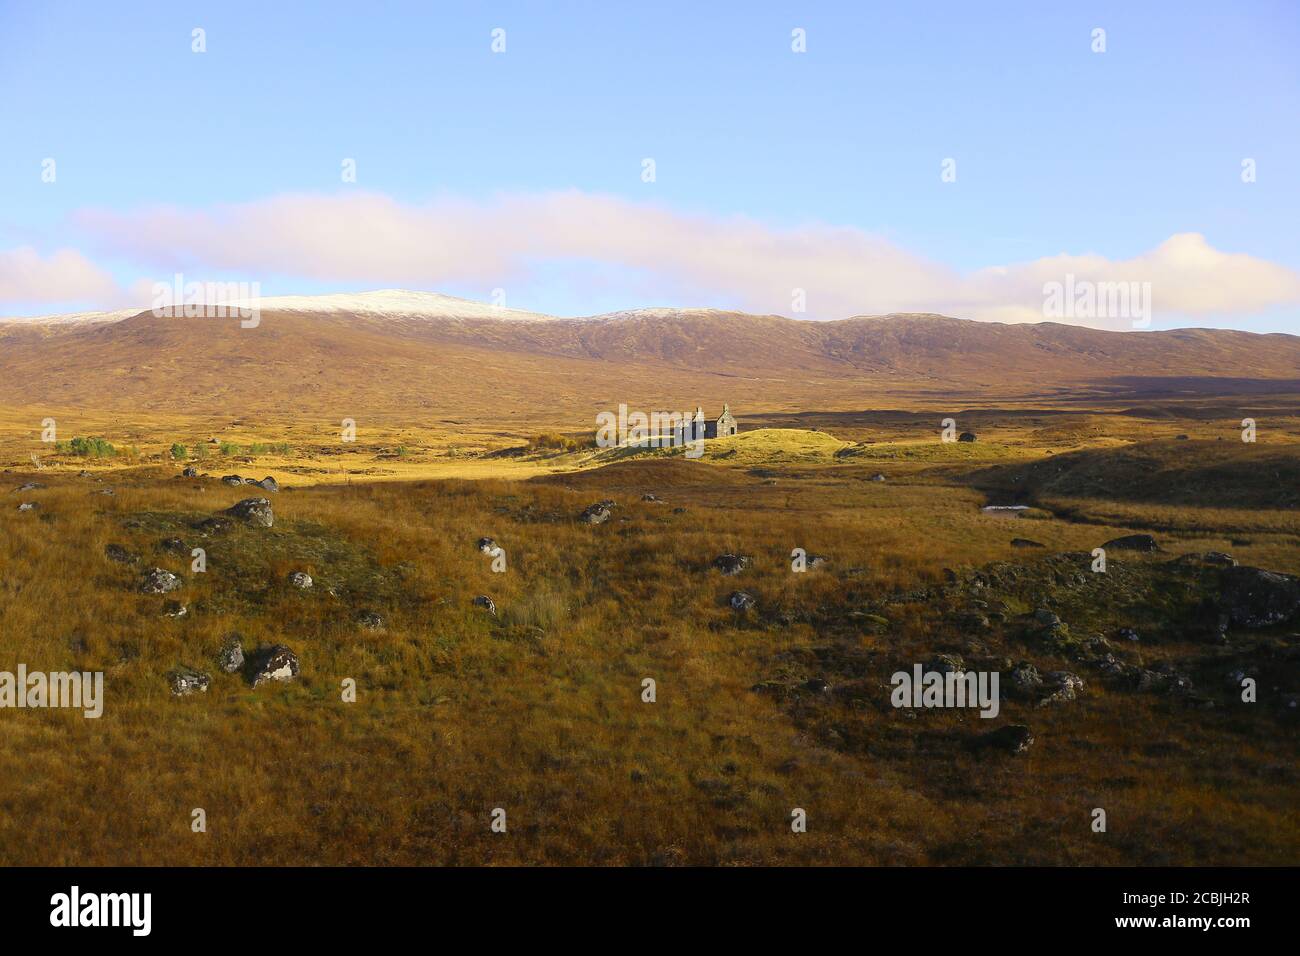 Die schottischen Highlands mit einer Ruine, die sehr düster aussieht. Stockfoto